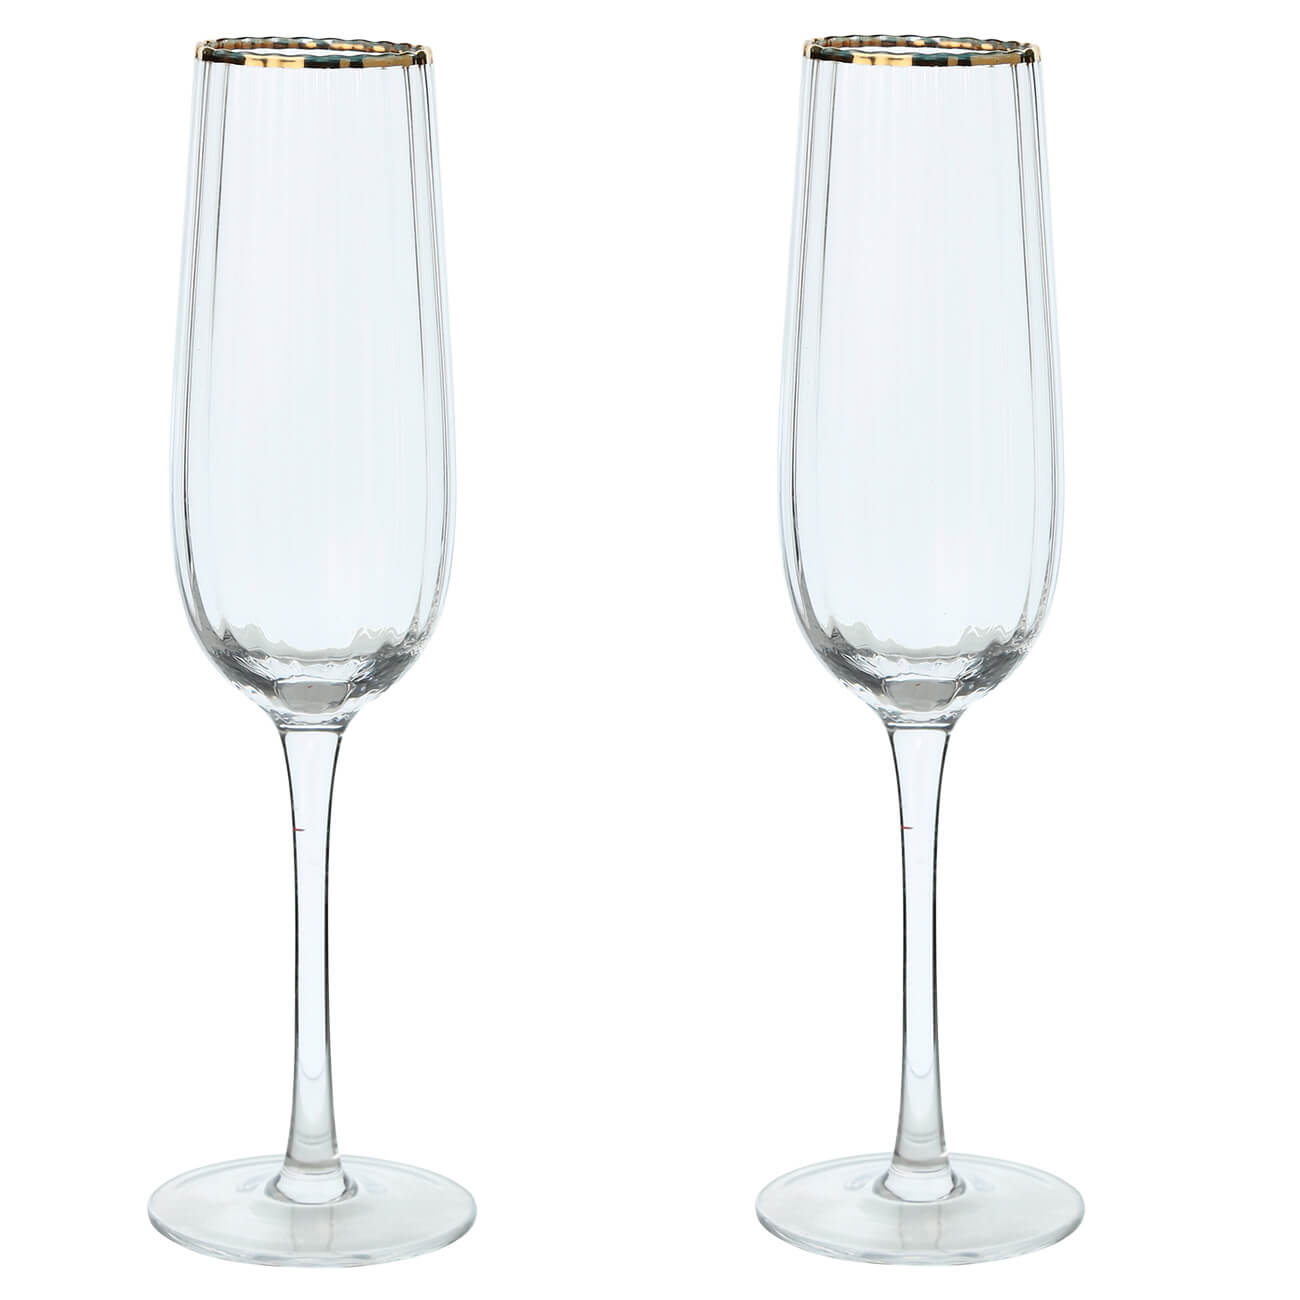 Бокал для шампанского, 275 мл, 2 шт, стекло, с золотистым кантом, Lombardy R Gold